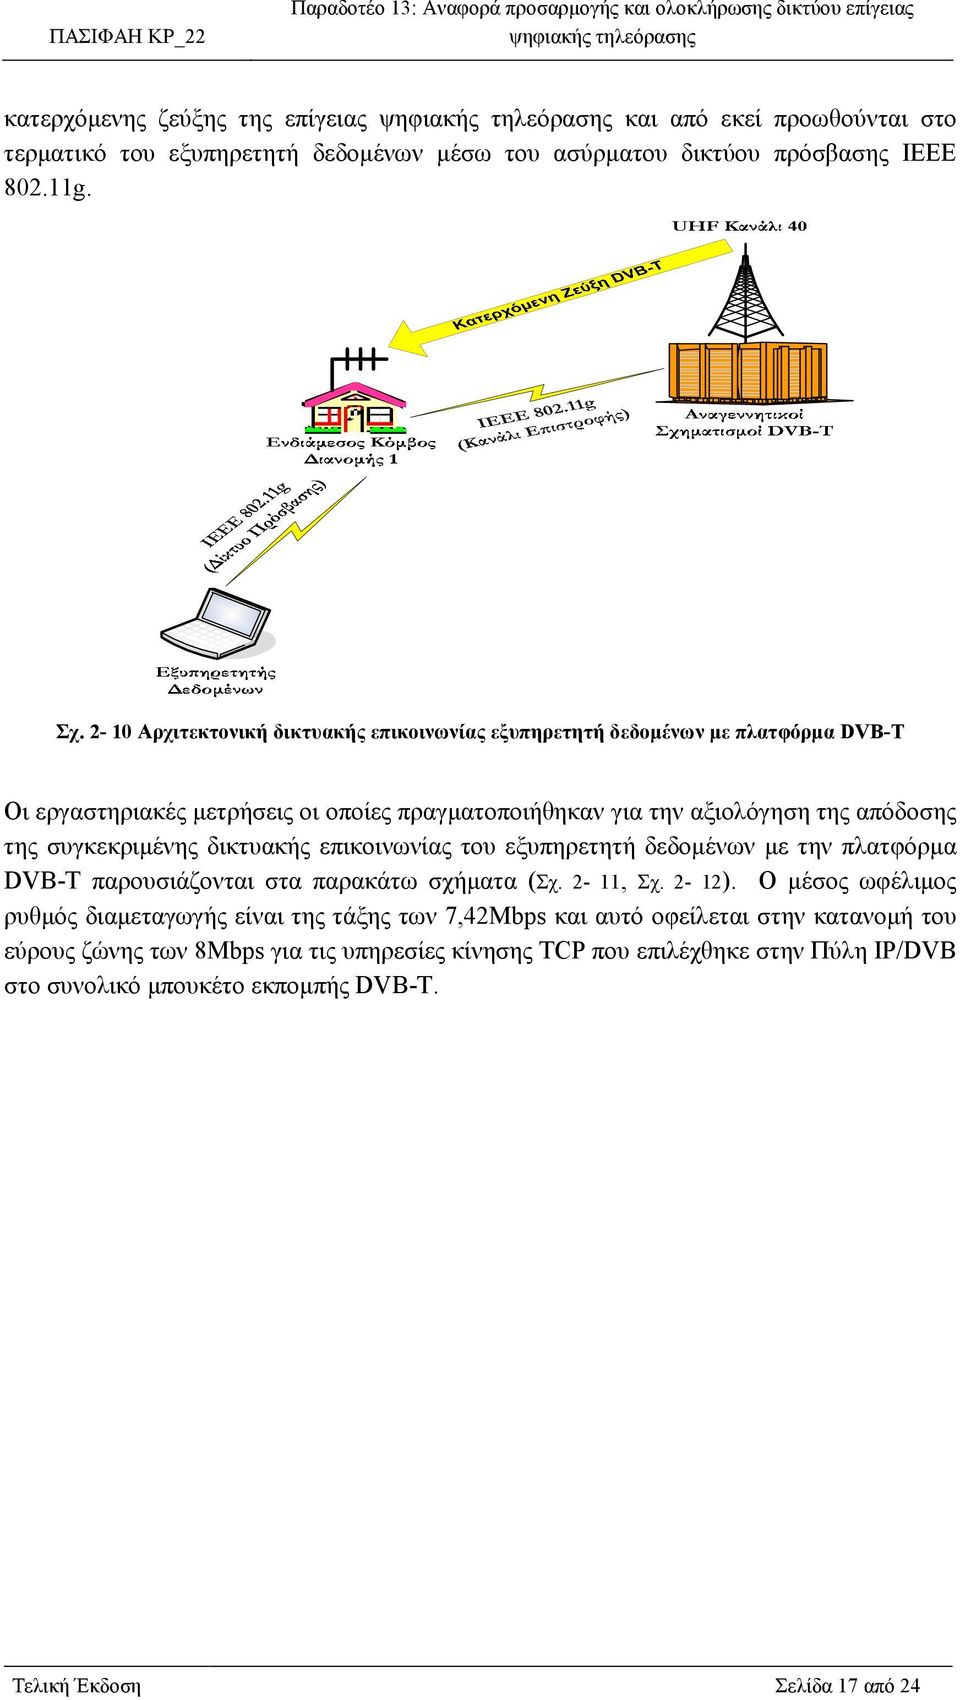 συγκεκριµένης δικτυακής επικοινωνίας του εξυπηρετητή δεδοµένων µε την πλατφόρµα DVB-T παρουσιάζονται στα παρακάτω σχήµατα (Σχ. 2-11, Σχ. 2-12).